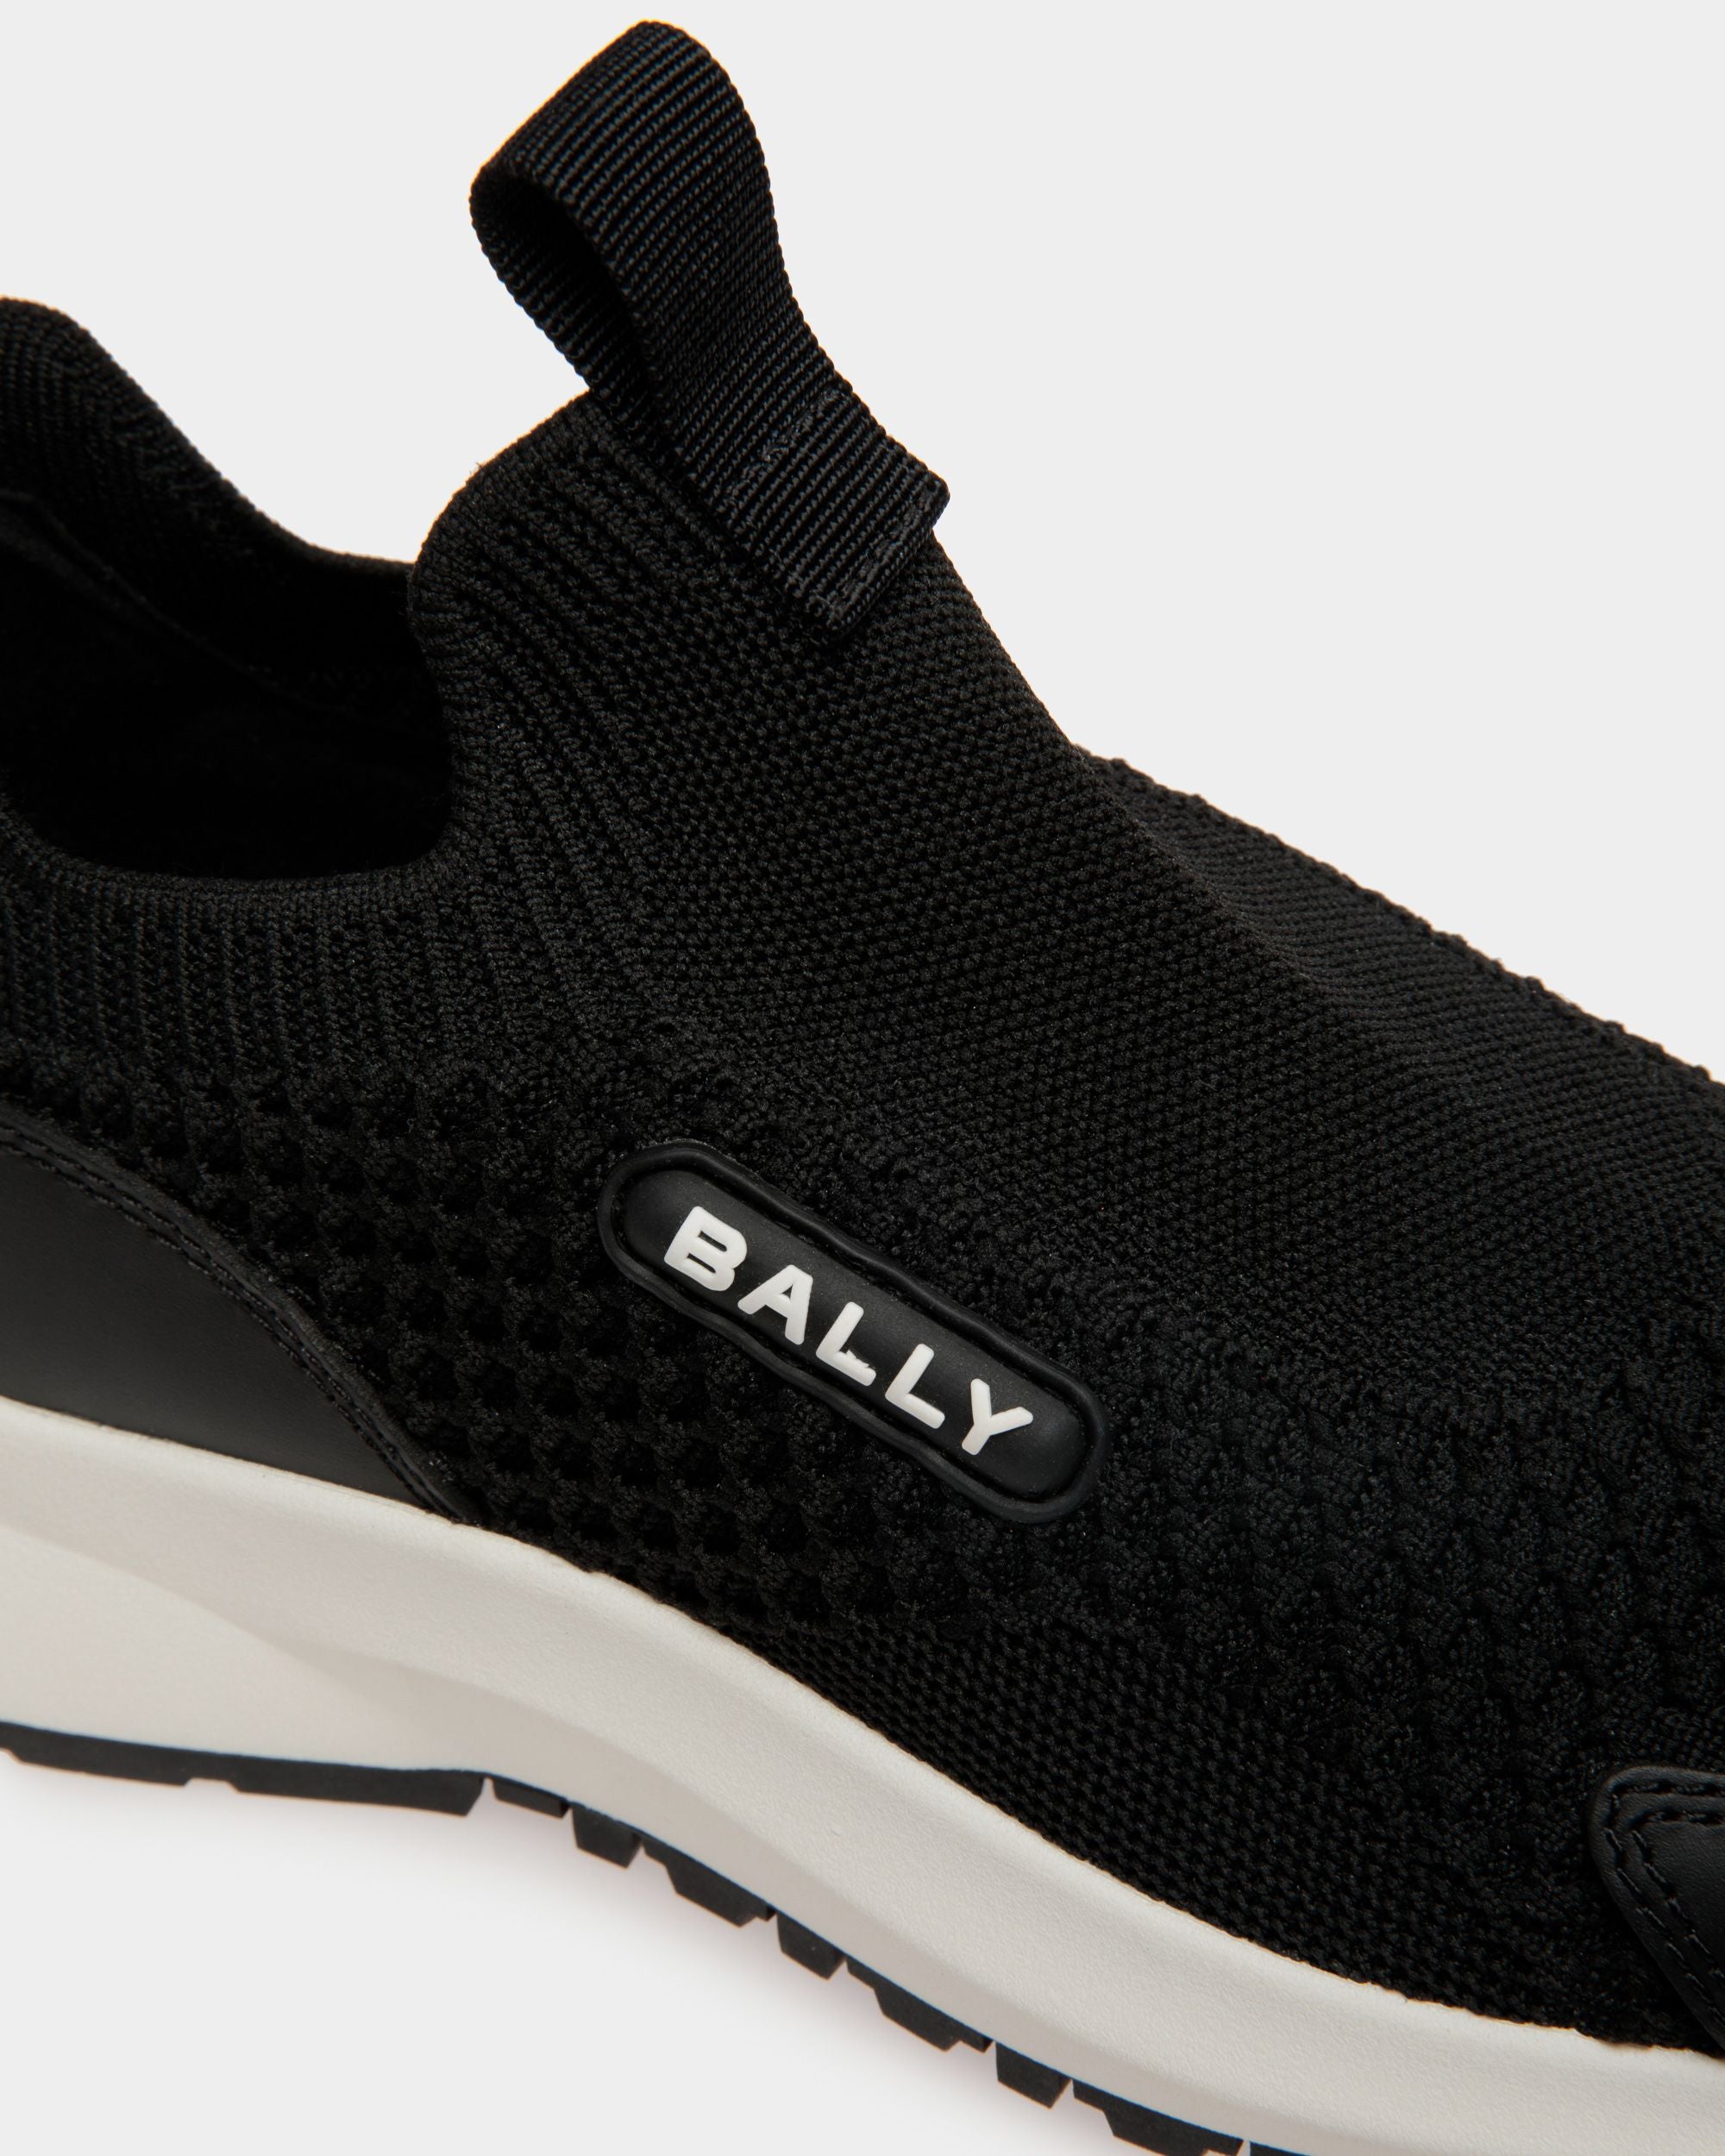 Outline | Sneaker für Damen aus schwarzem Strickgewebe | Bally | Still Life Detail